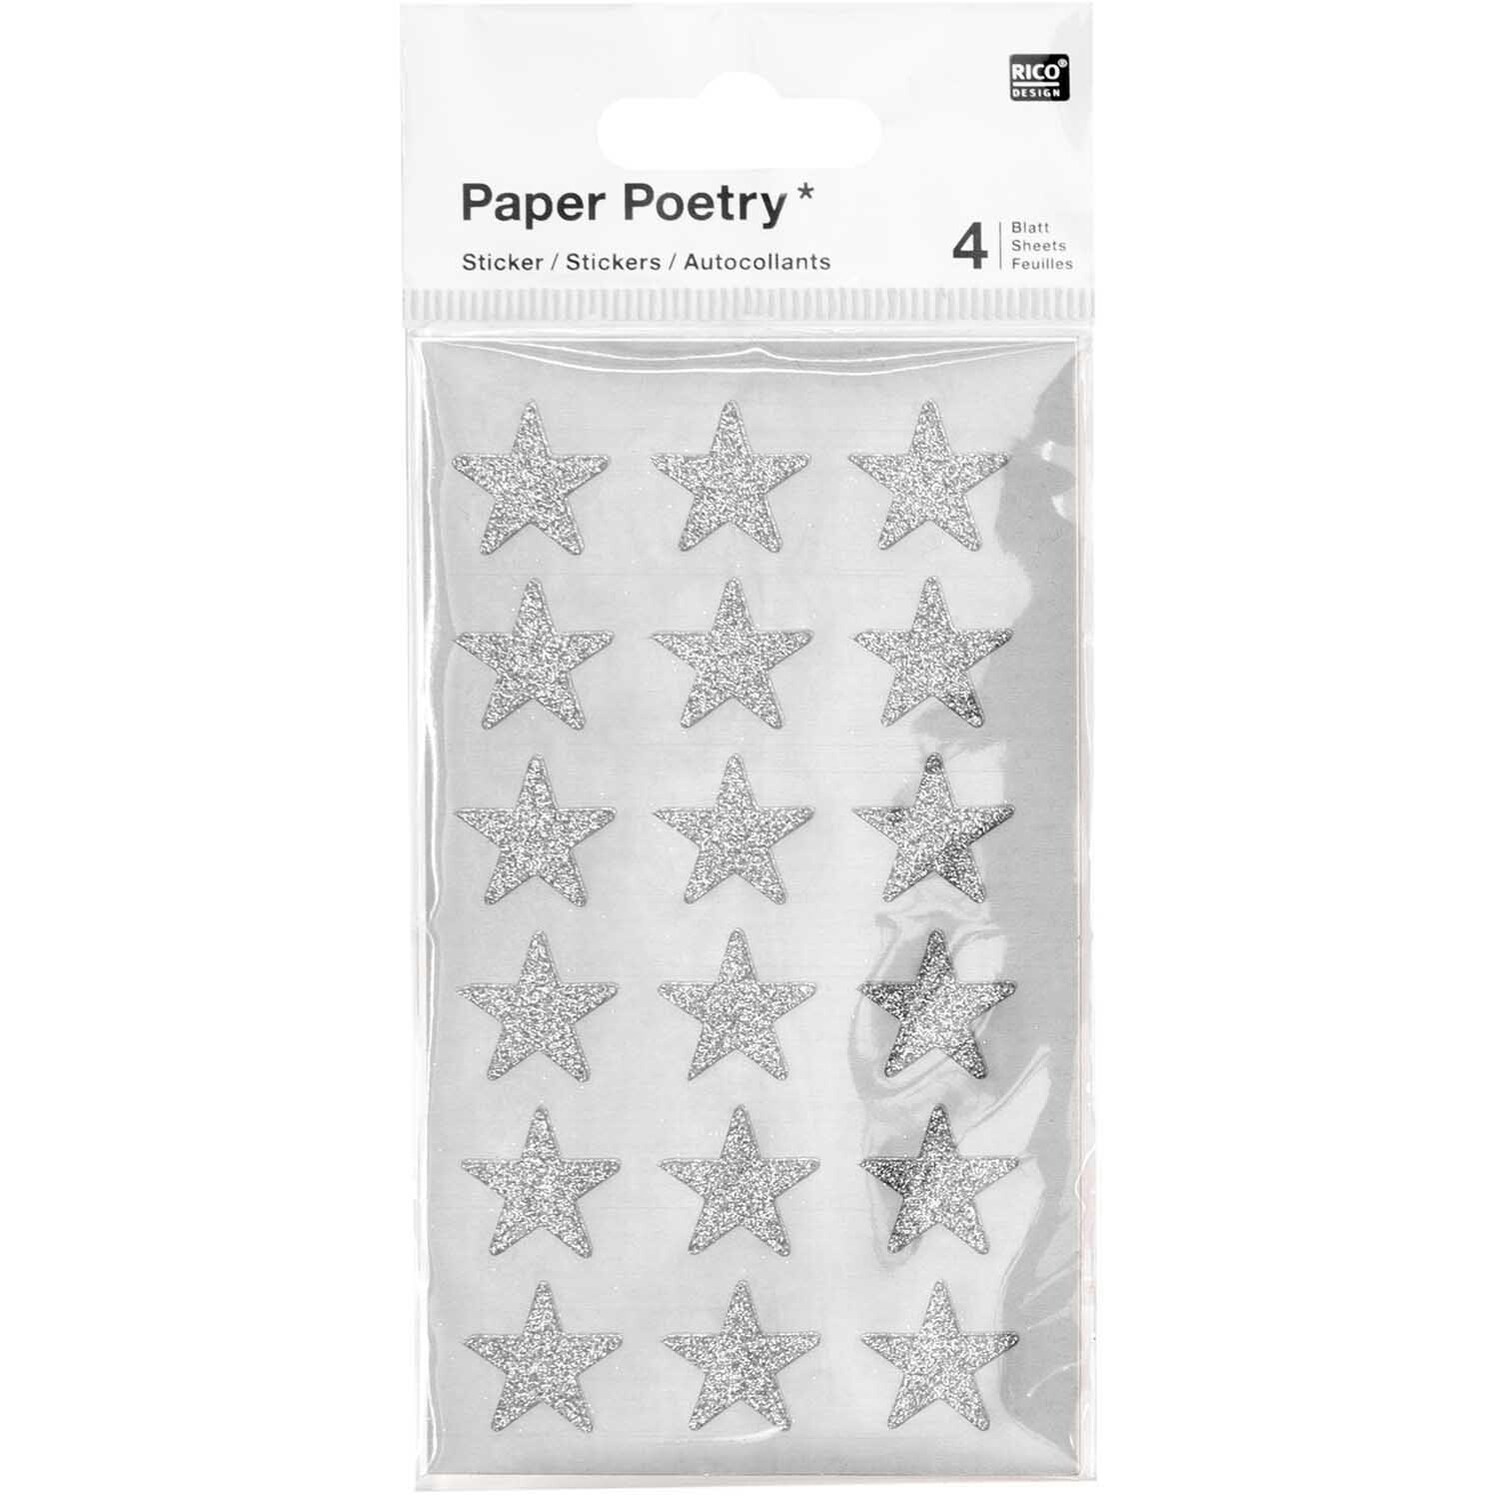 Paper Poetry Sticker Sterne Glitter silber 4 Blatt